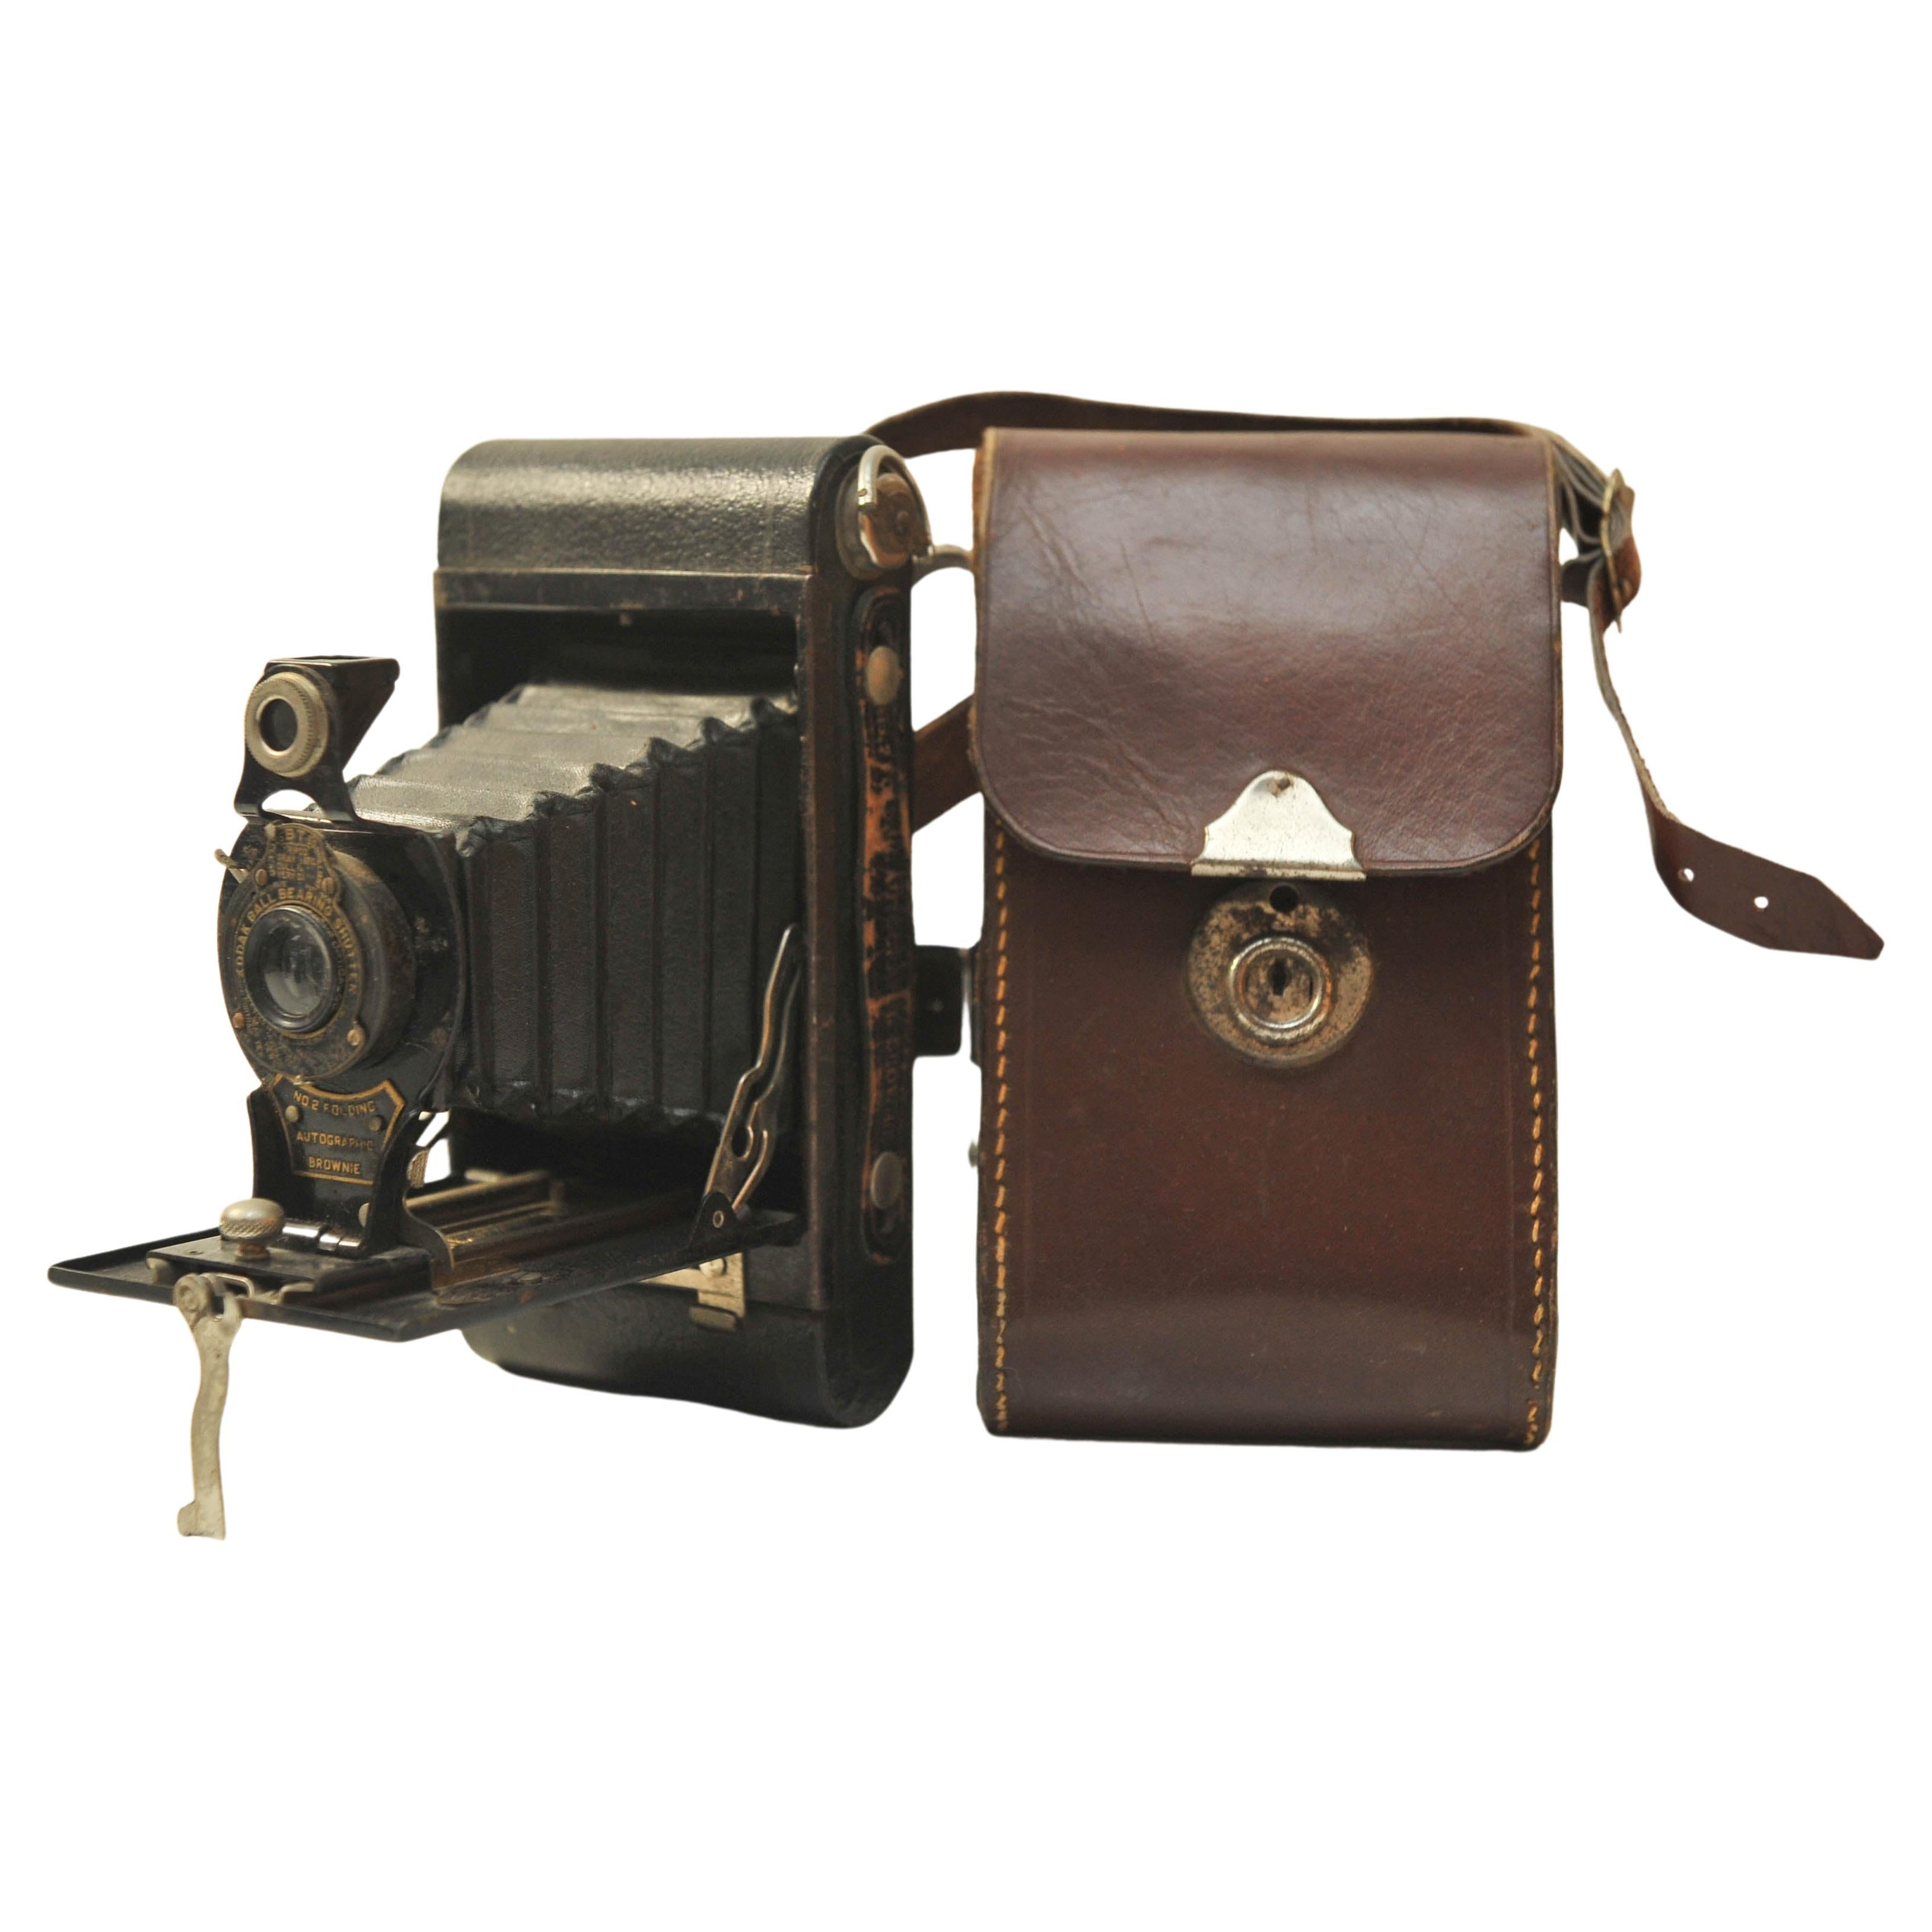 Eastman Kodak Co No. 1 Pocket Kodak Jr. 120 Roll Film Folding Below Camera with 112mm F6.3 Anastigmat Lens 

Fabriqué entre 1910-19

Numéro 36241, avec obturateur à roulement à billes

Fabriqué à Rochester, NY

L'Autographic Kodak Jr. n° 1 est un